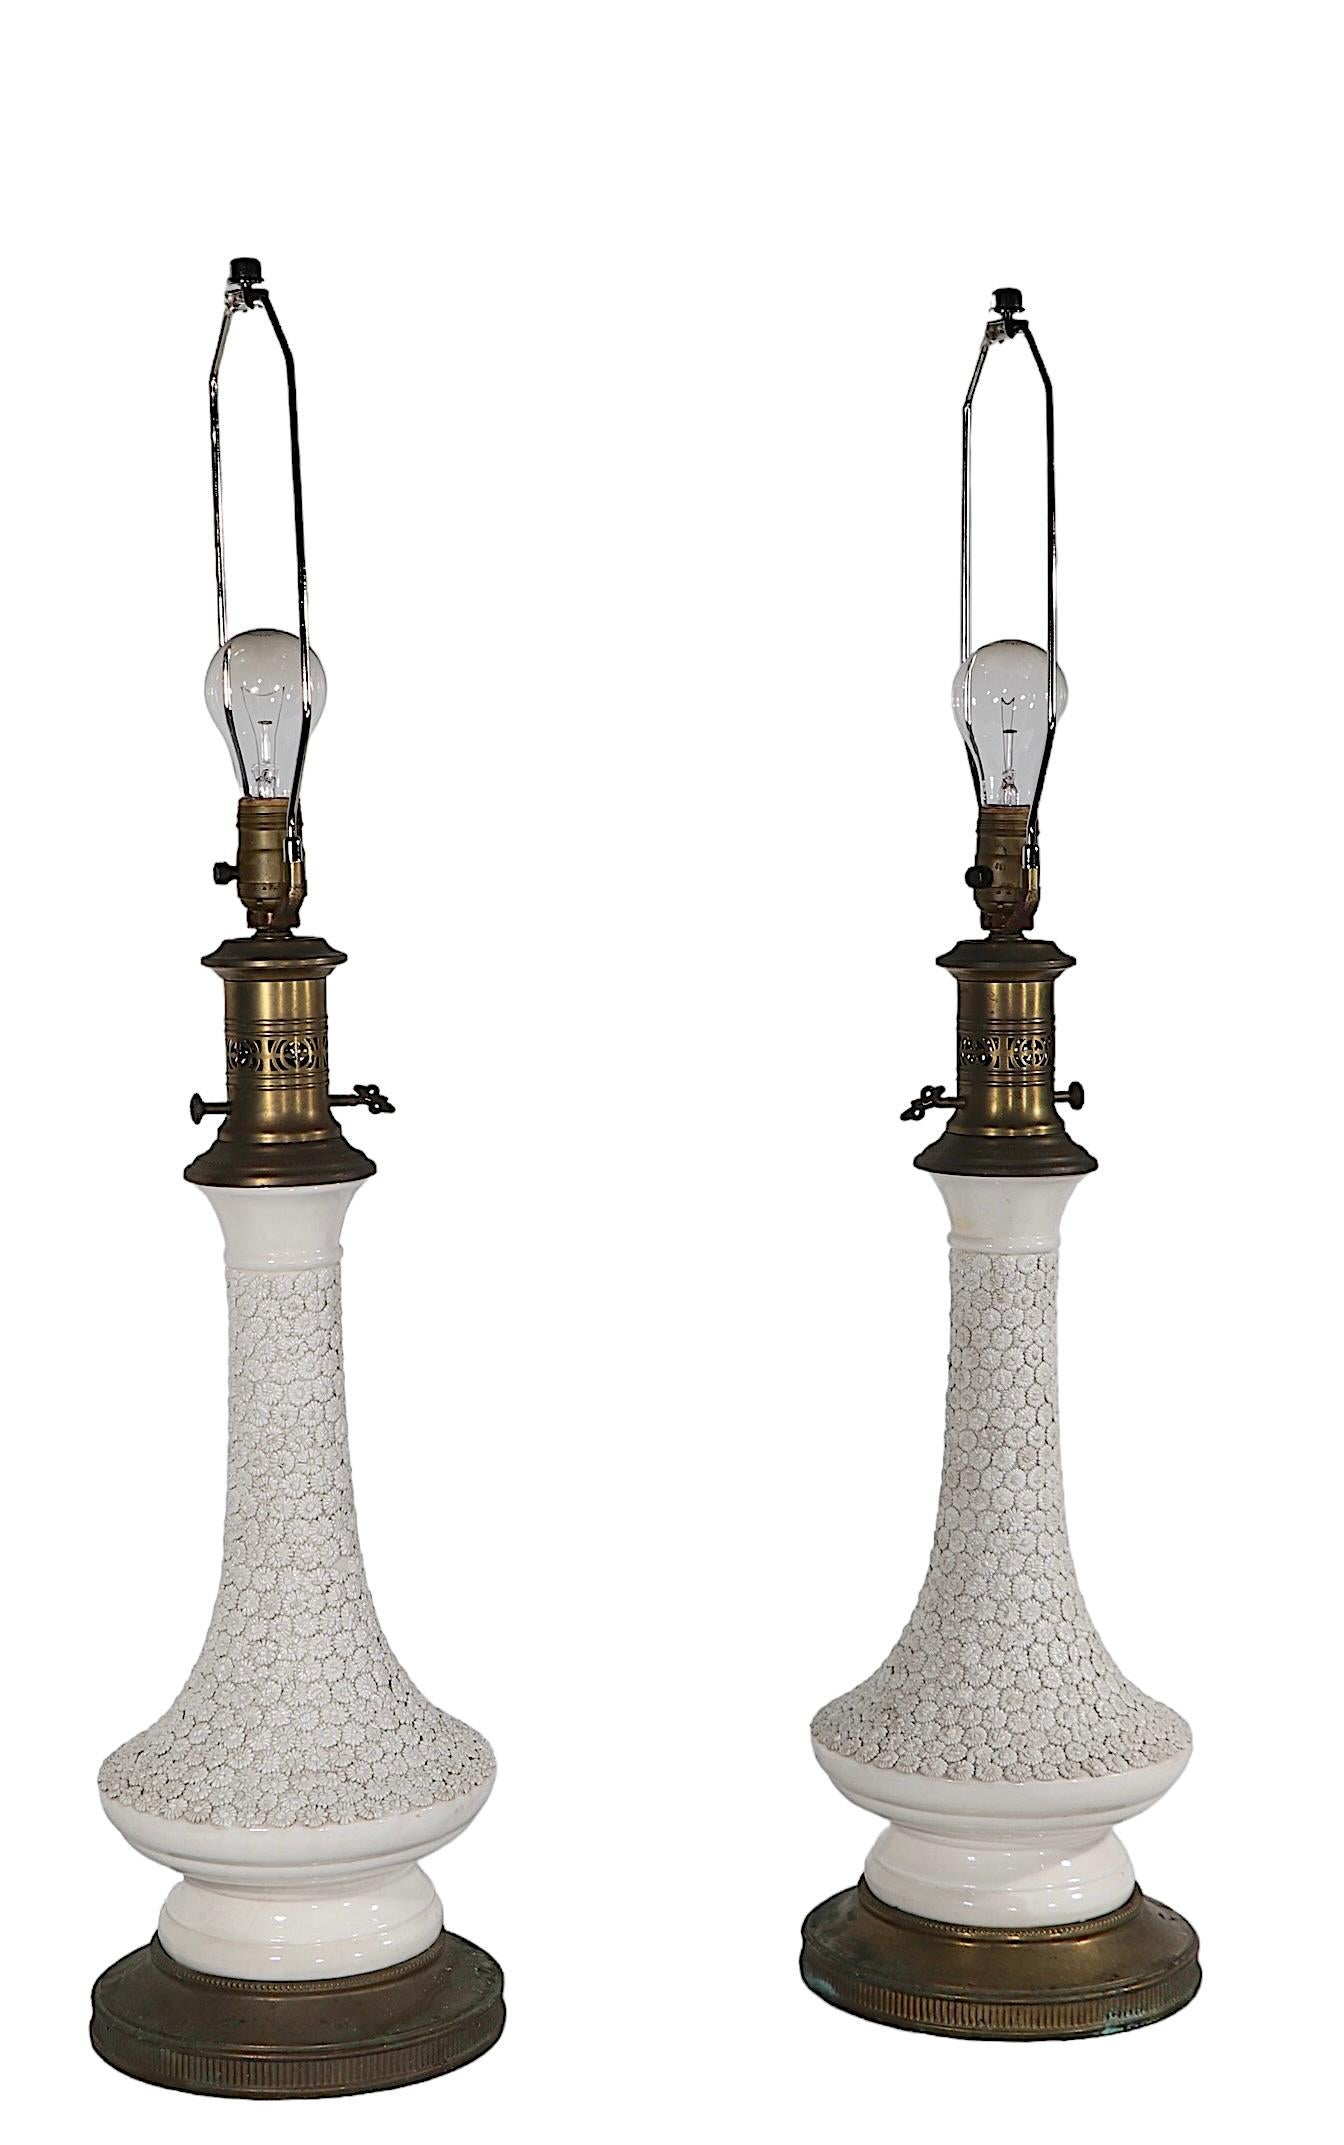 20th Century Pr. Decorative Blanc de Chine Style Table Lamps by Paul Hanson c 1960's For Sale